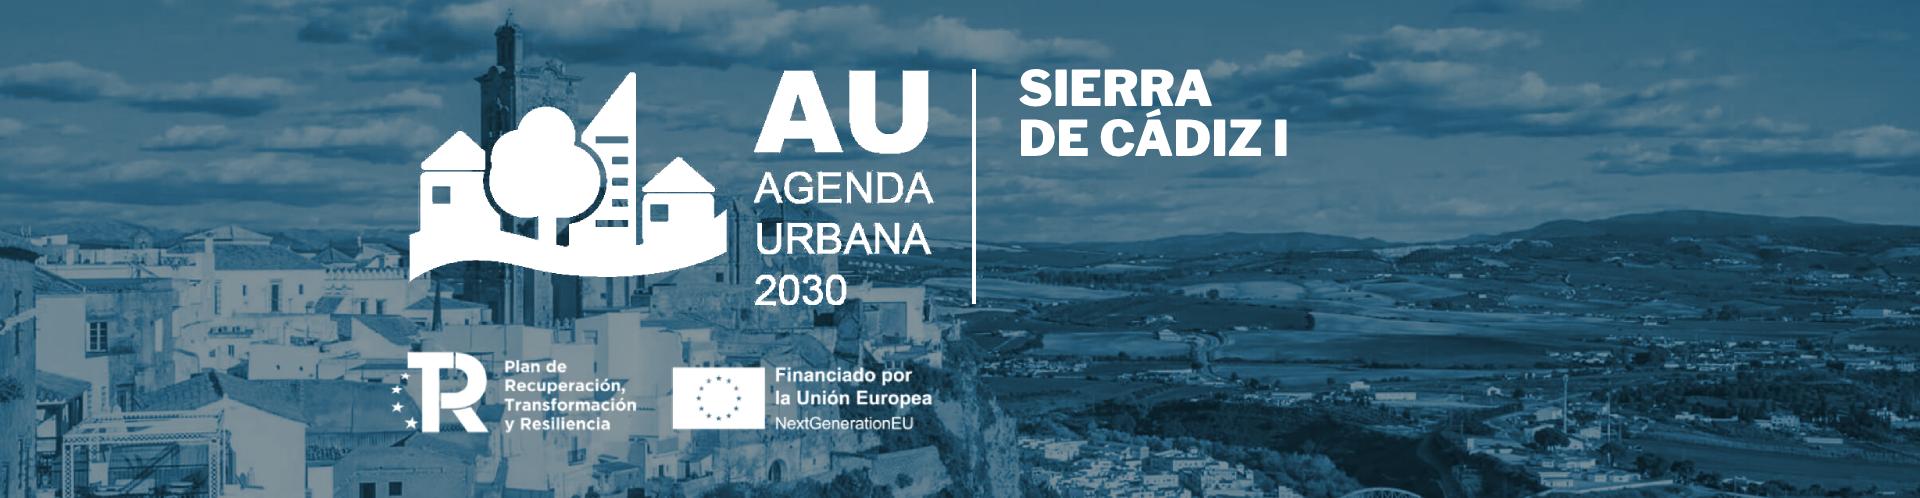 Agenda Urbana 2030 Sierra de Cádiz I